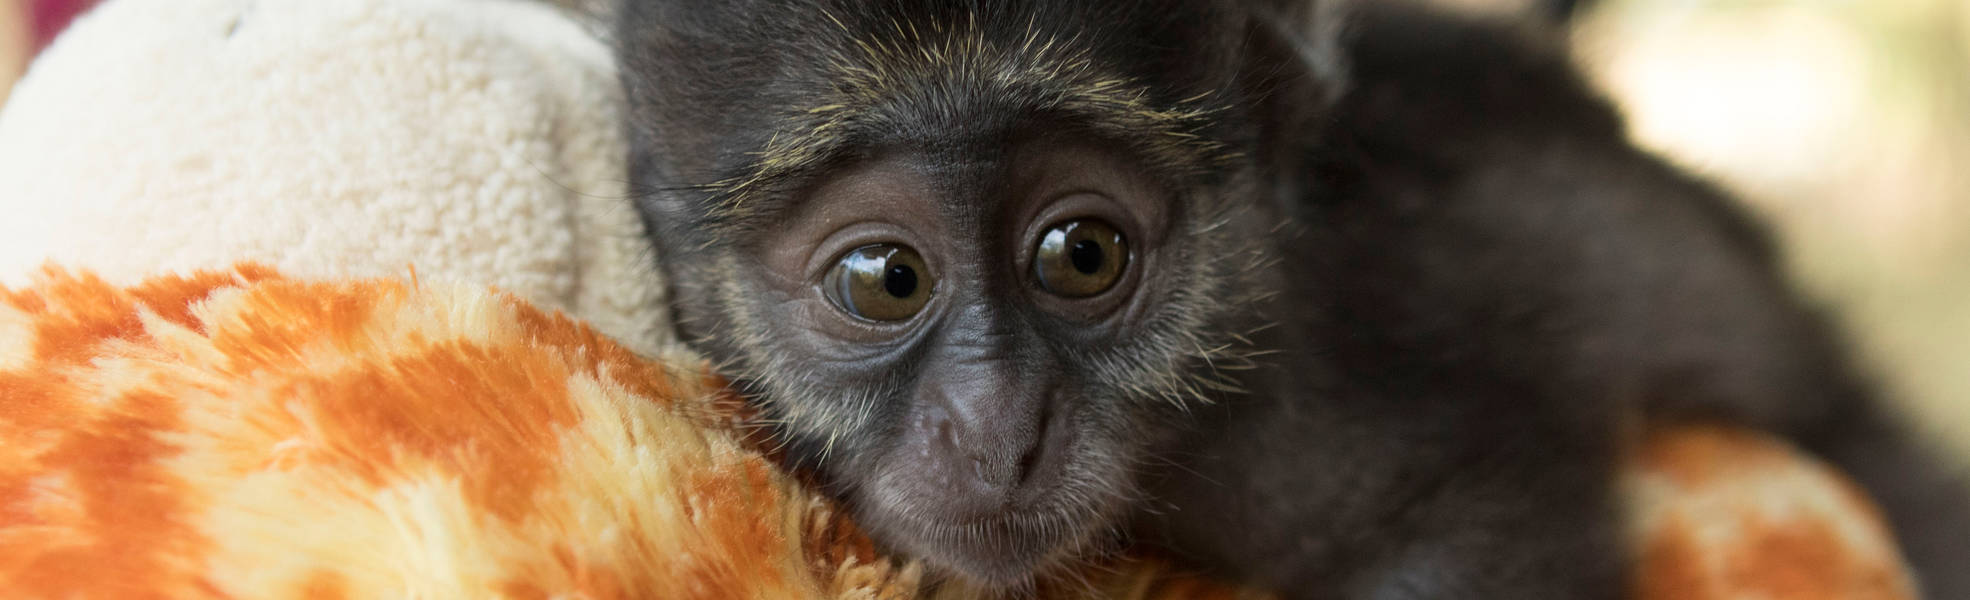 Freiwilligenarbeit mit Affen in Südafrika